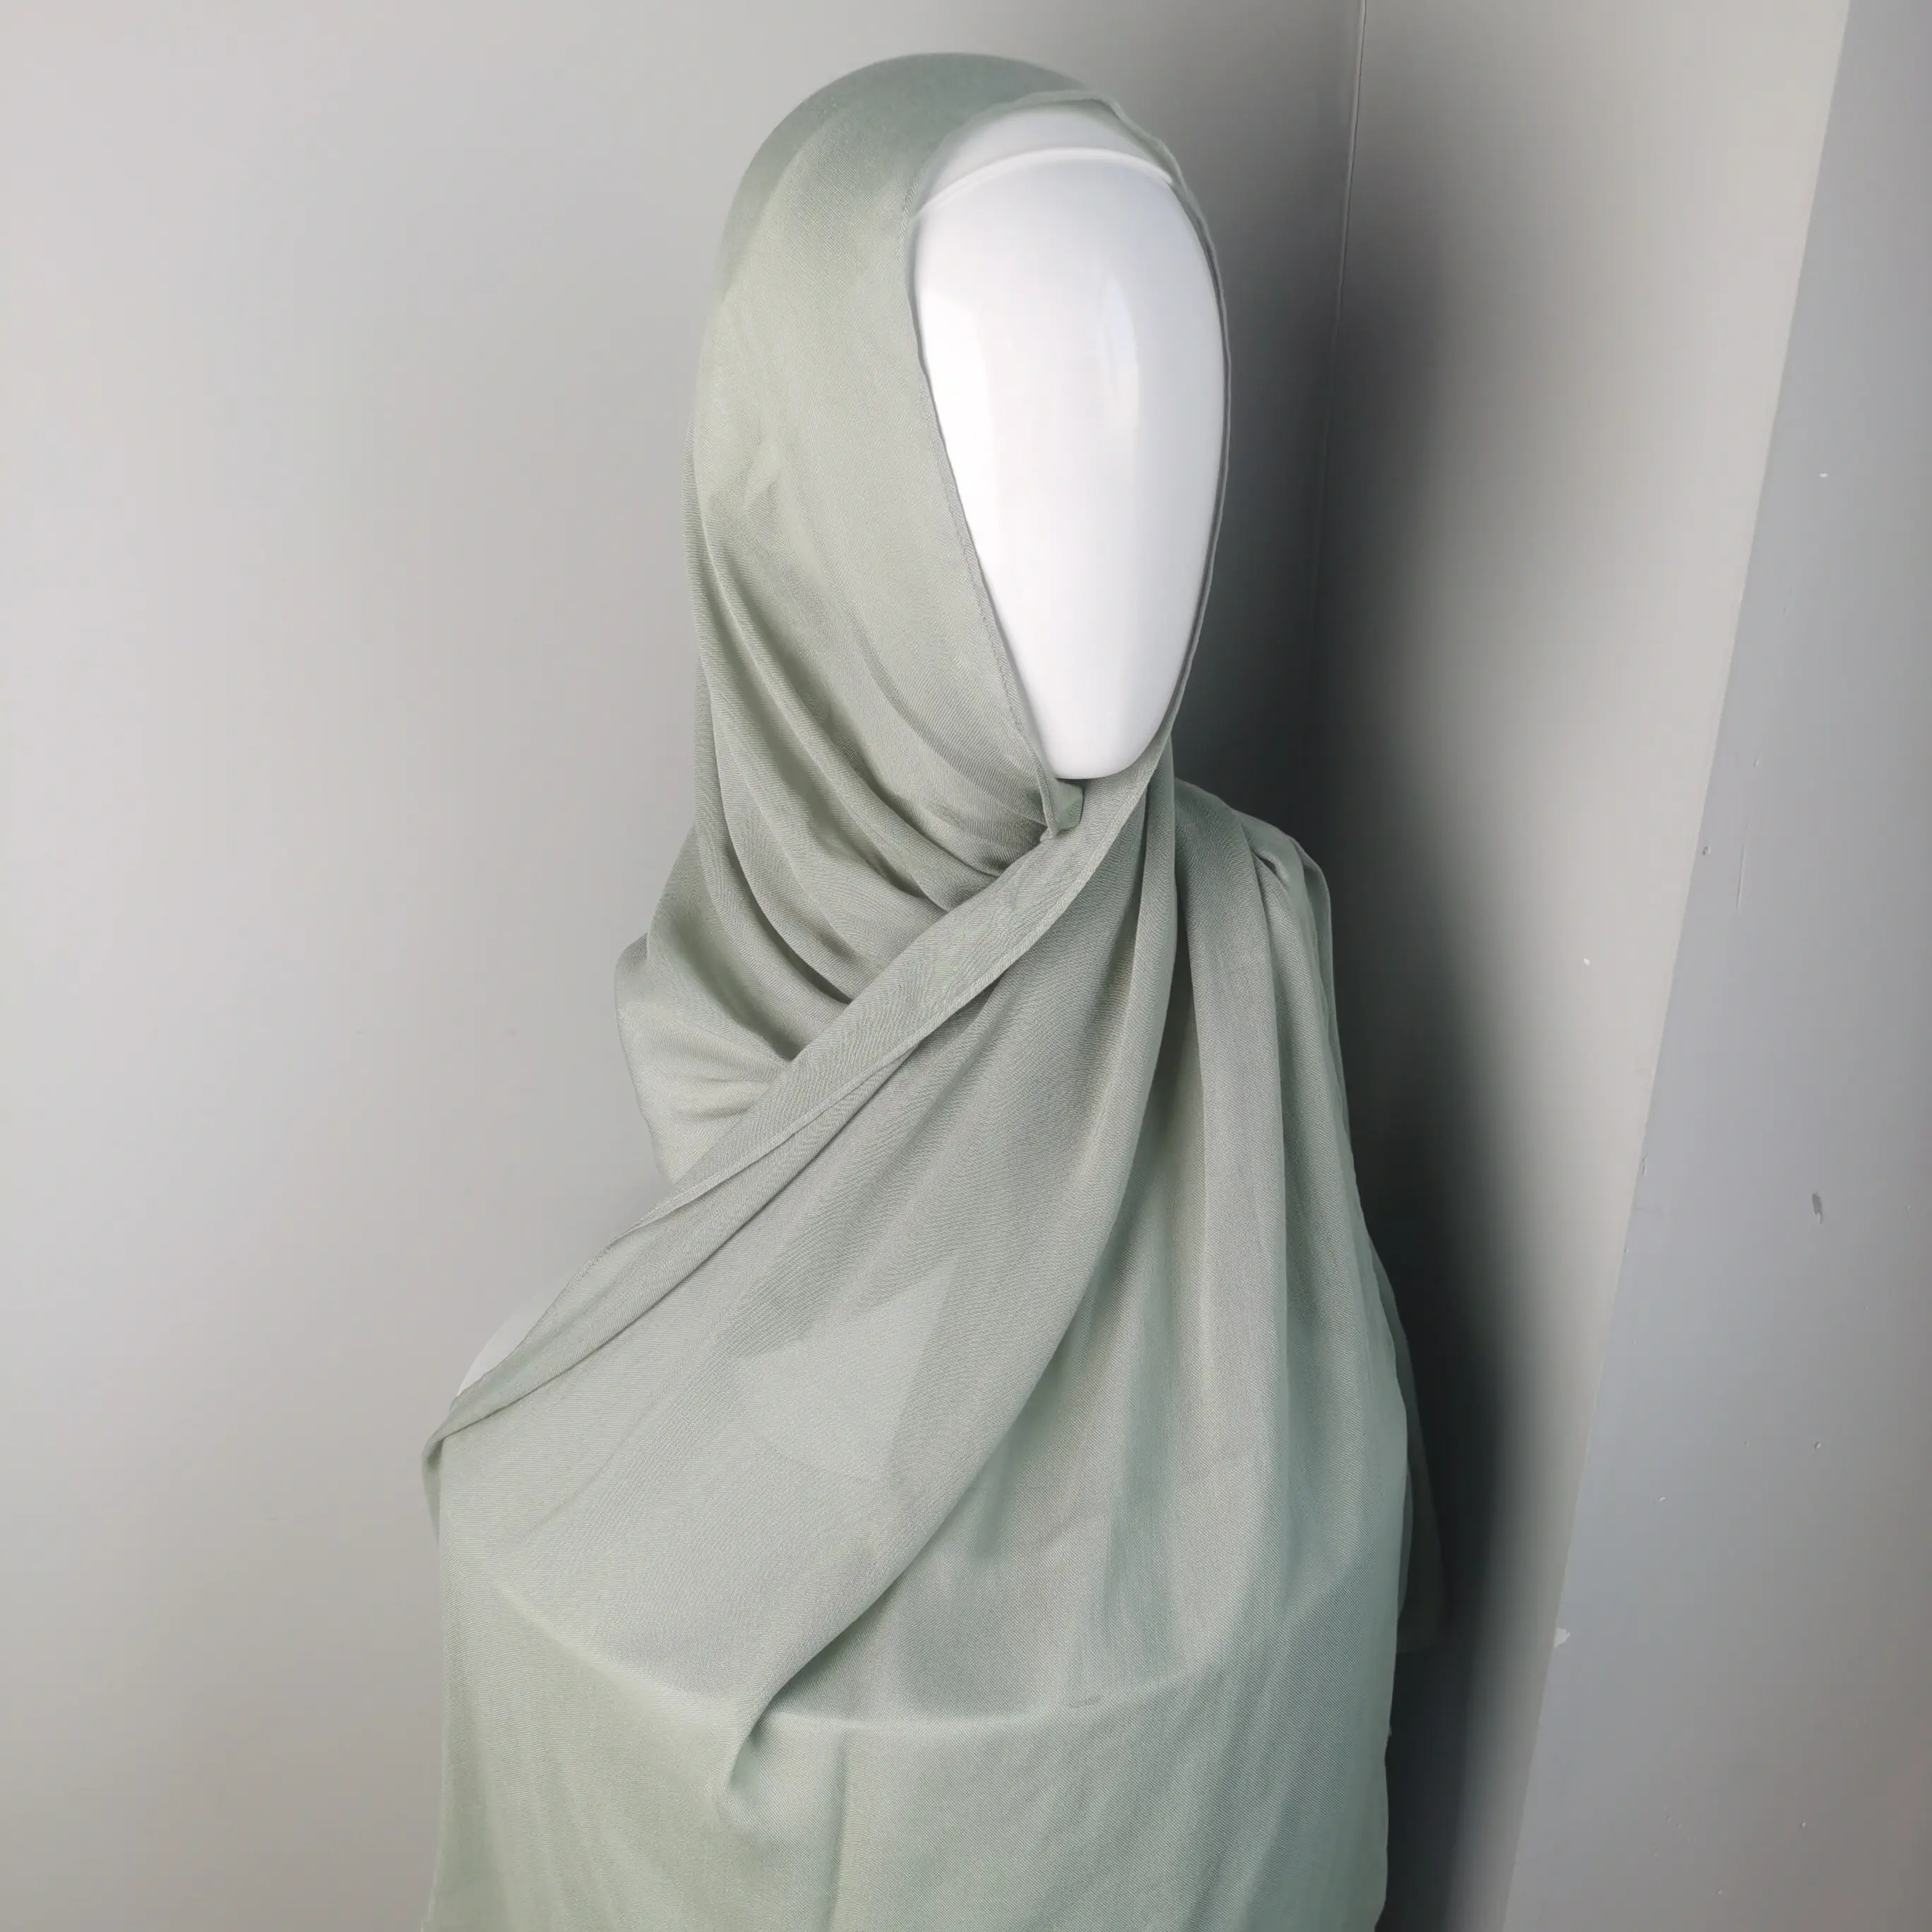 Modal Pure Natural Eco Friendly Natural 100% Bamboo Modal Hijab cotton viscose Woven Fashion hijab